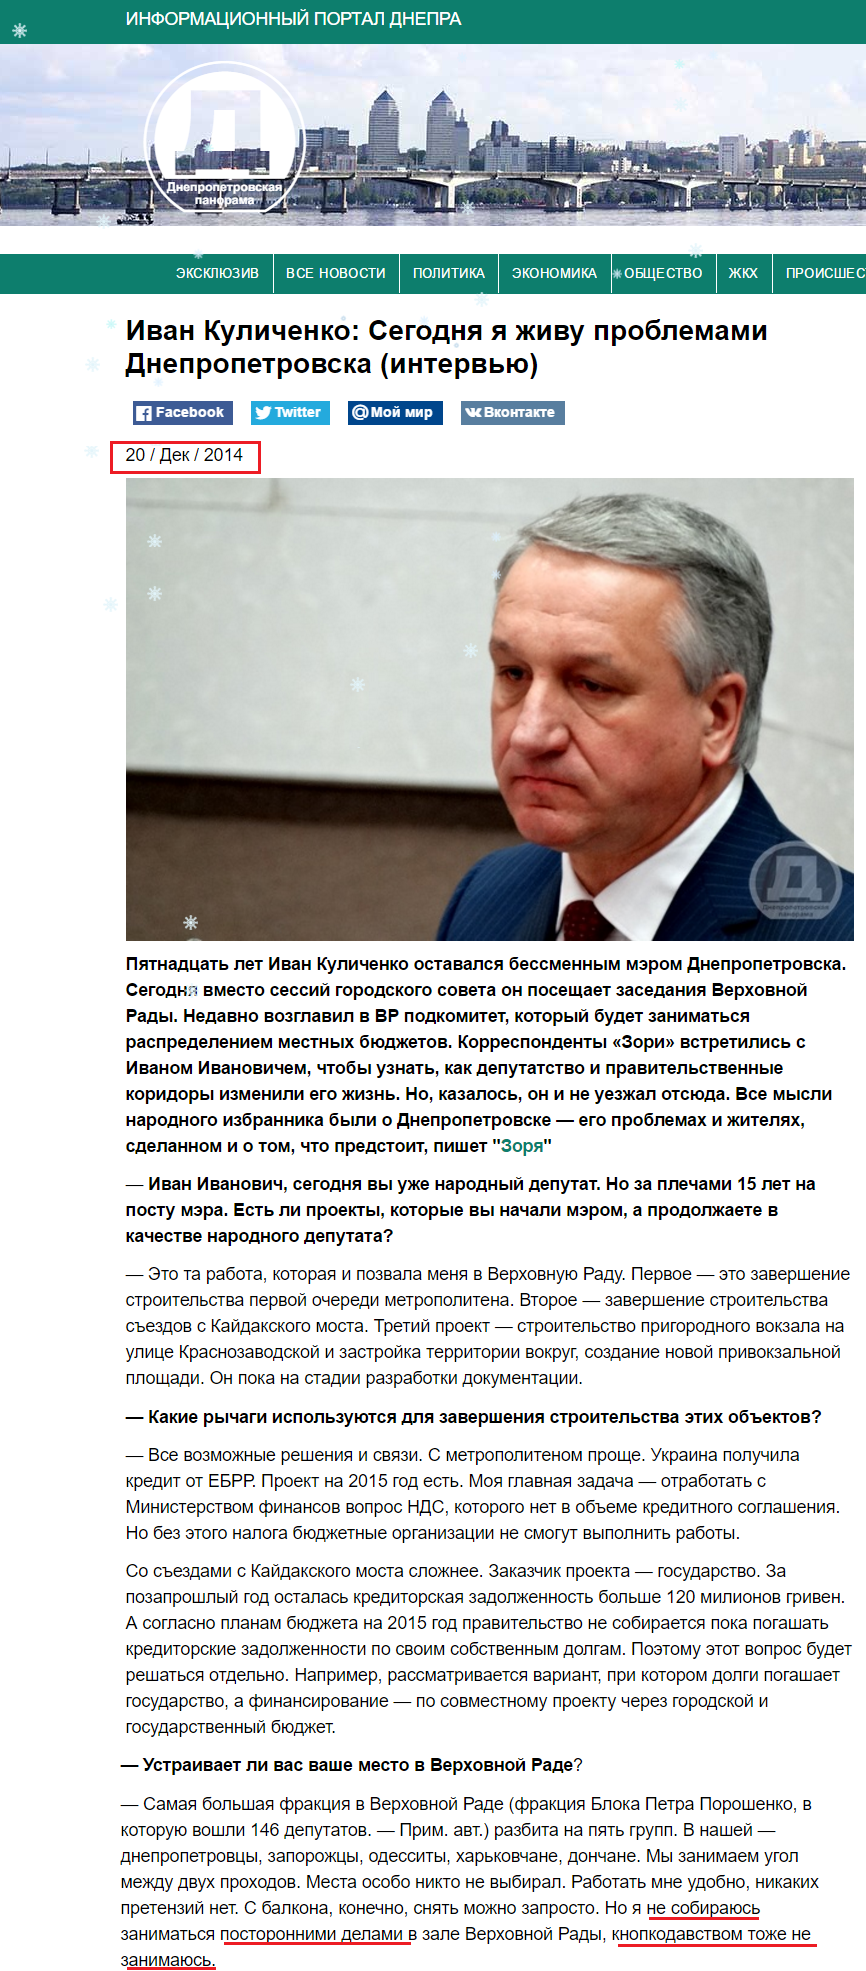 http://dnpr.com.ua/content/ivan-kulichenko-segodnya-ya-zhivu-problemami-dnepropetrovska-intervyu